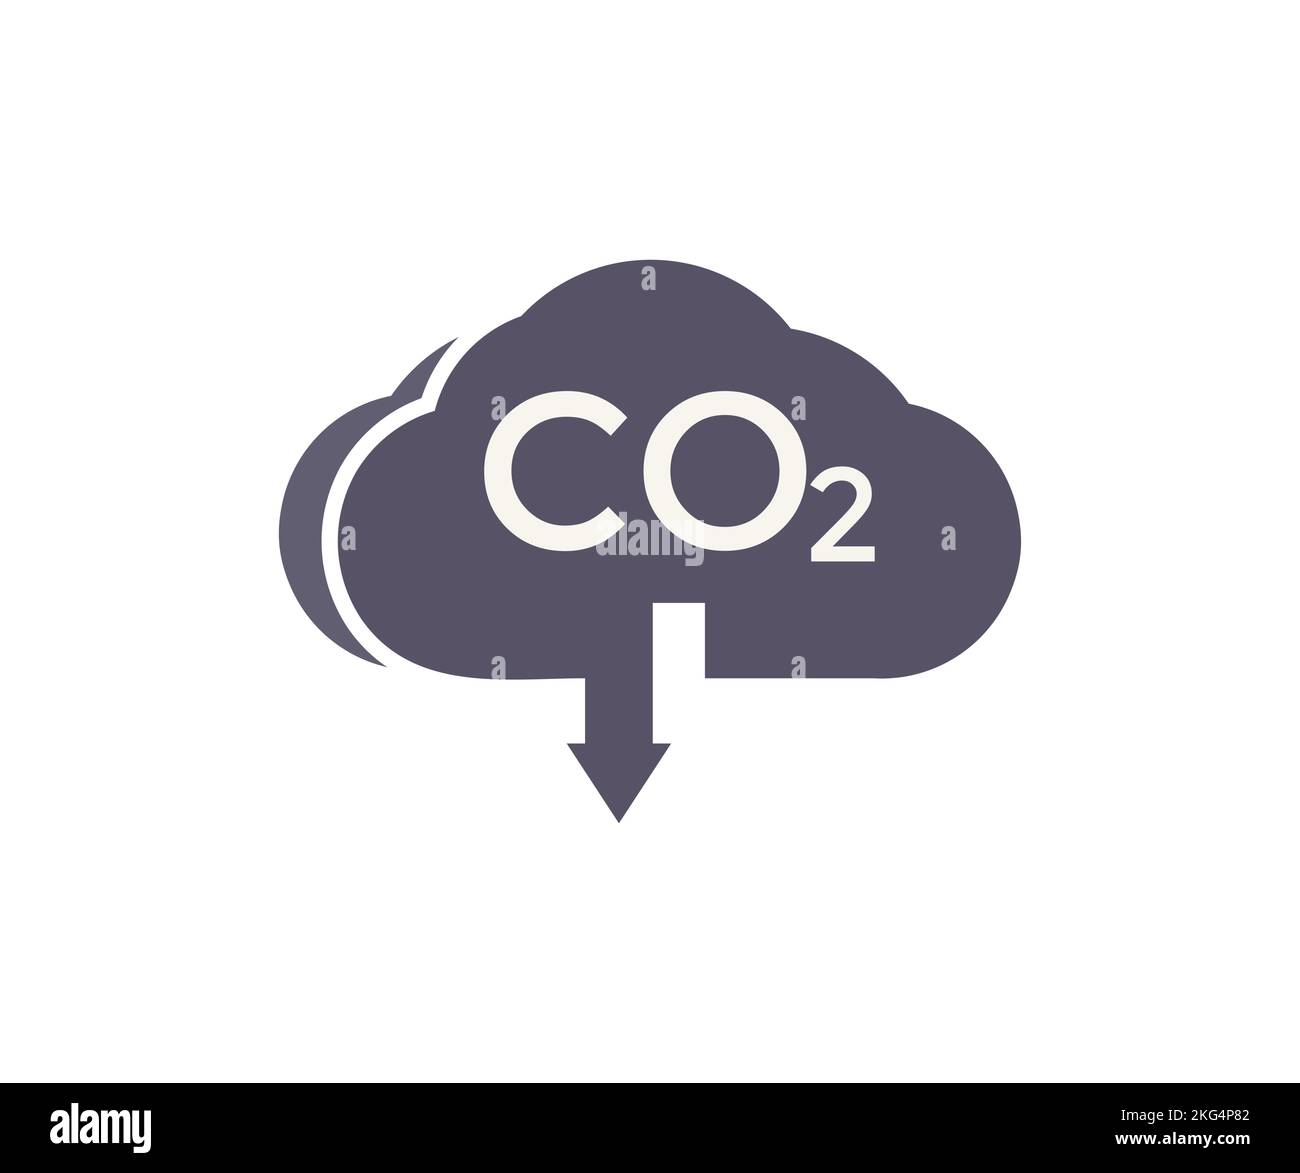 CO2 Wolke, CO2 Emissionen Logo-Design. Kohlengaswolke, Luftverschmutzung durch Kohlendioxid. Globales ökologisches Abgas-Smog-Konzept. Begrenzung Der Globalen Erwärmung. Stock Vektor